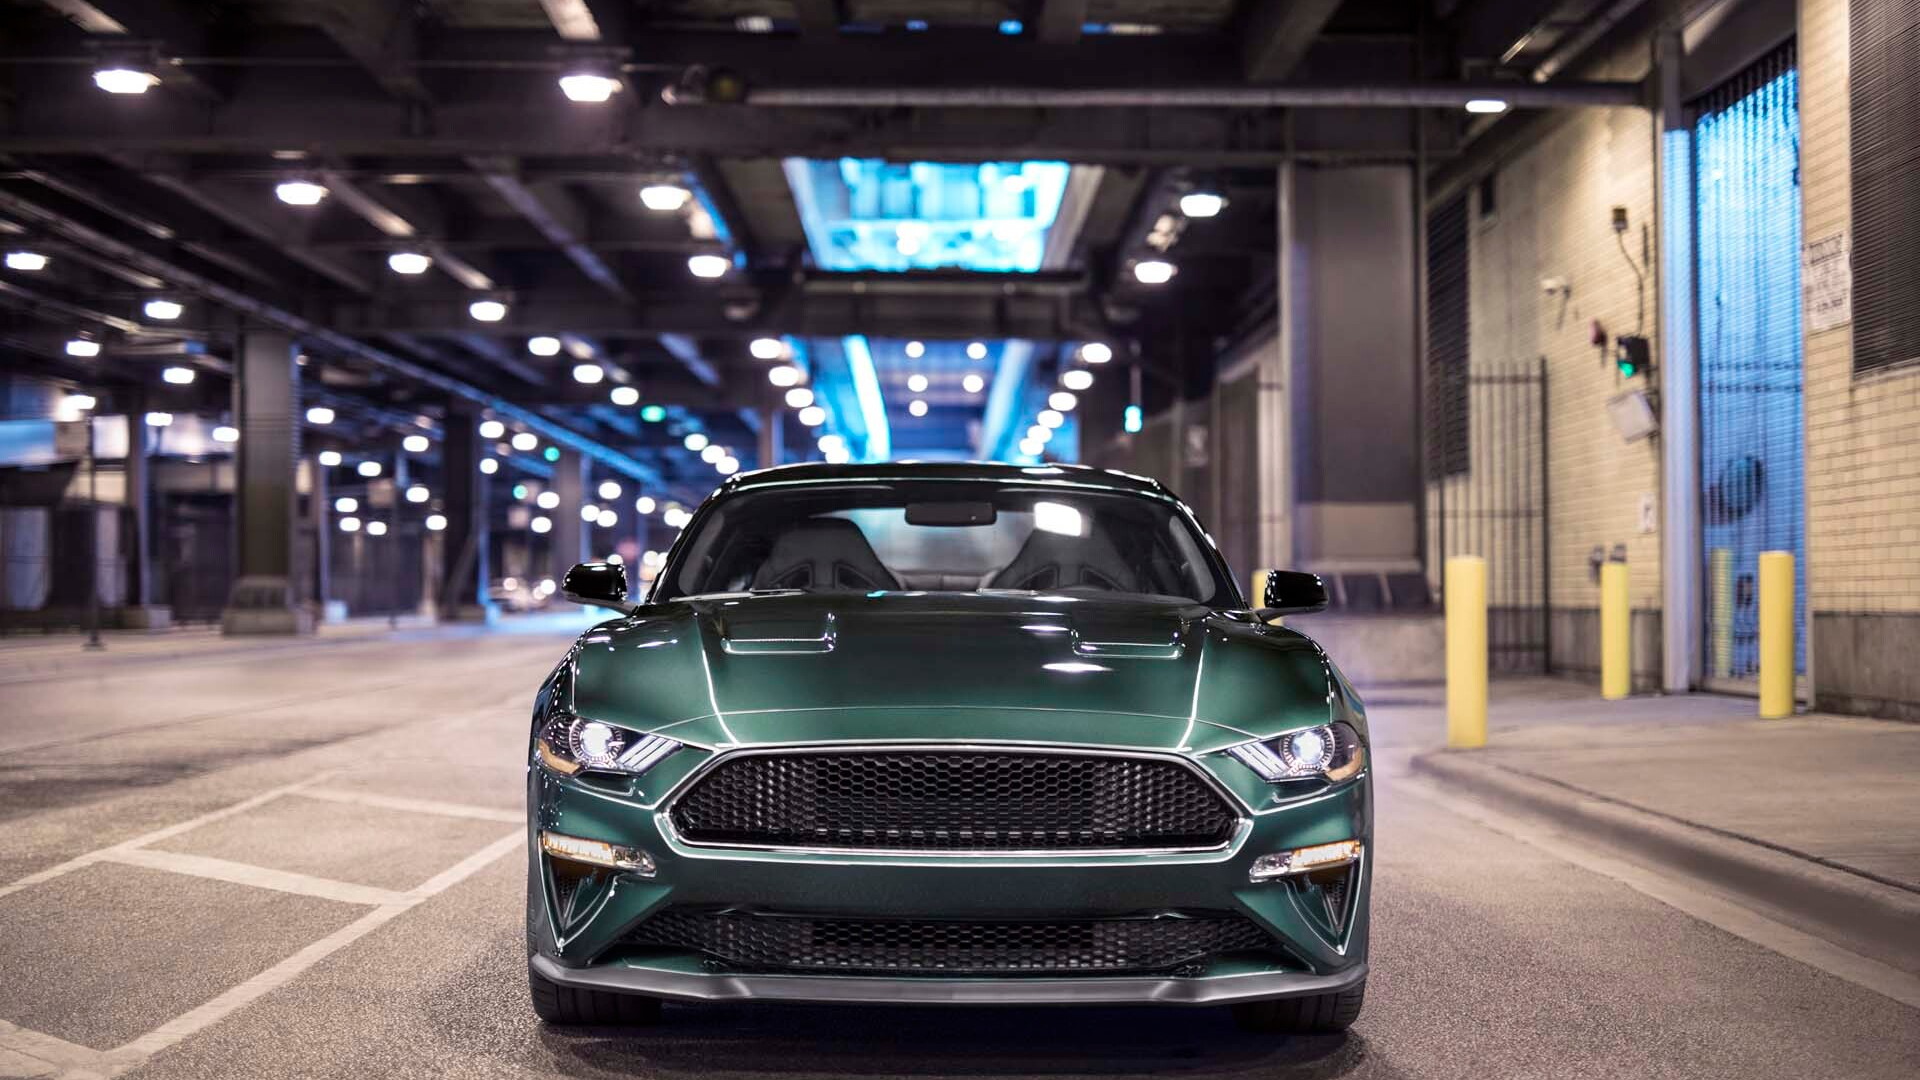 2019 Ford Mustang Bullitt first drive